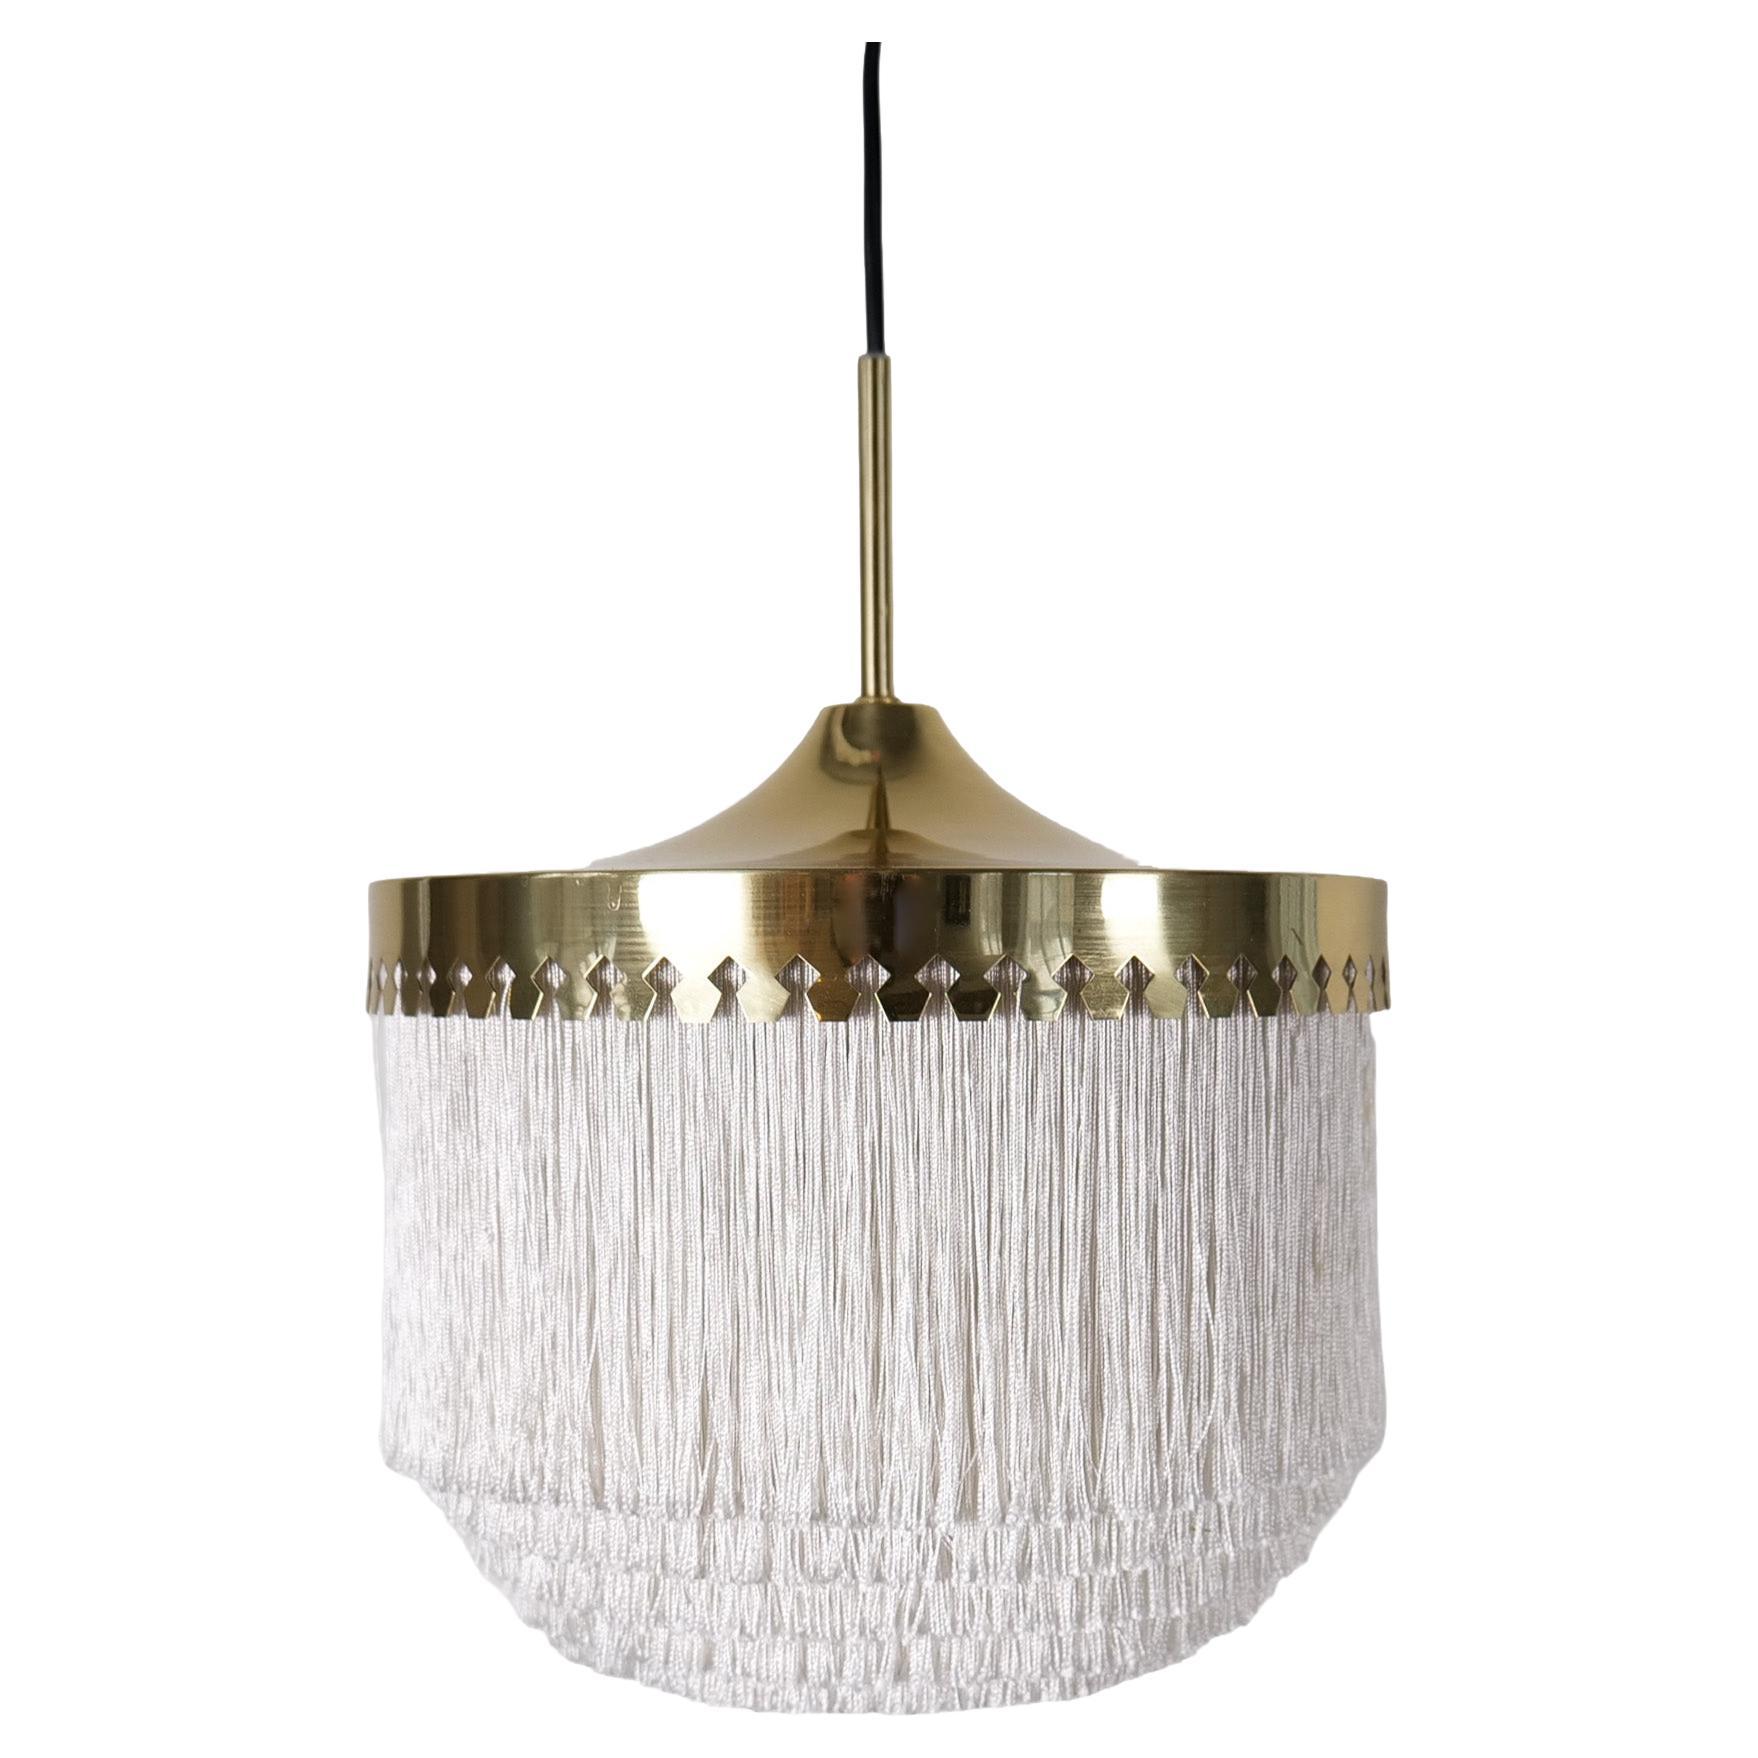 Midcentury Modern Hans-Agne Jakobsson Ceiling Fringe Lamp Model T601, Sweden For Sale